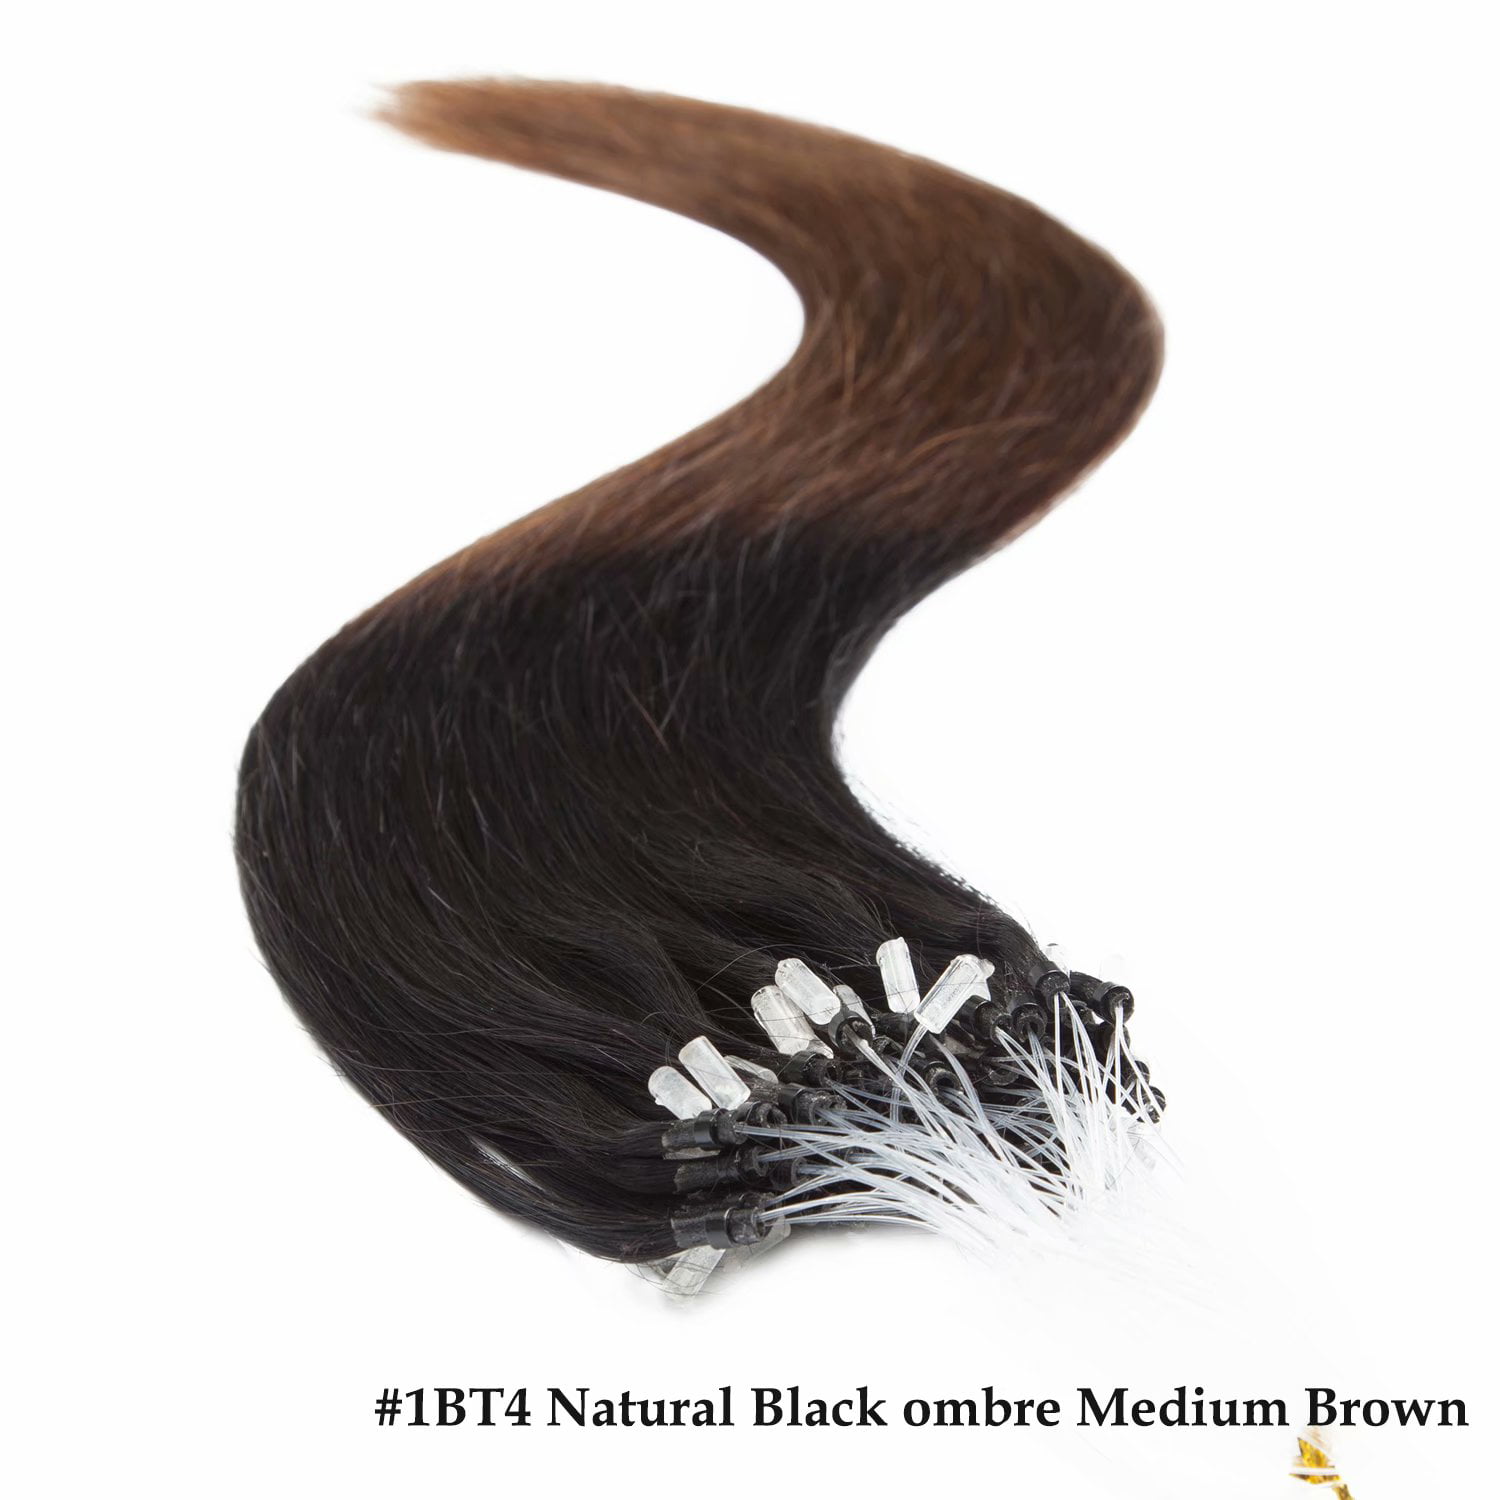 HAIR EXTENSION BEADS (BLONDE, LT BROWN, DARK BROWN, BLACK) — BRIXT + CO